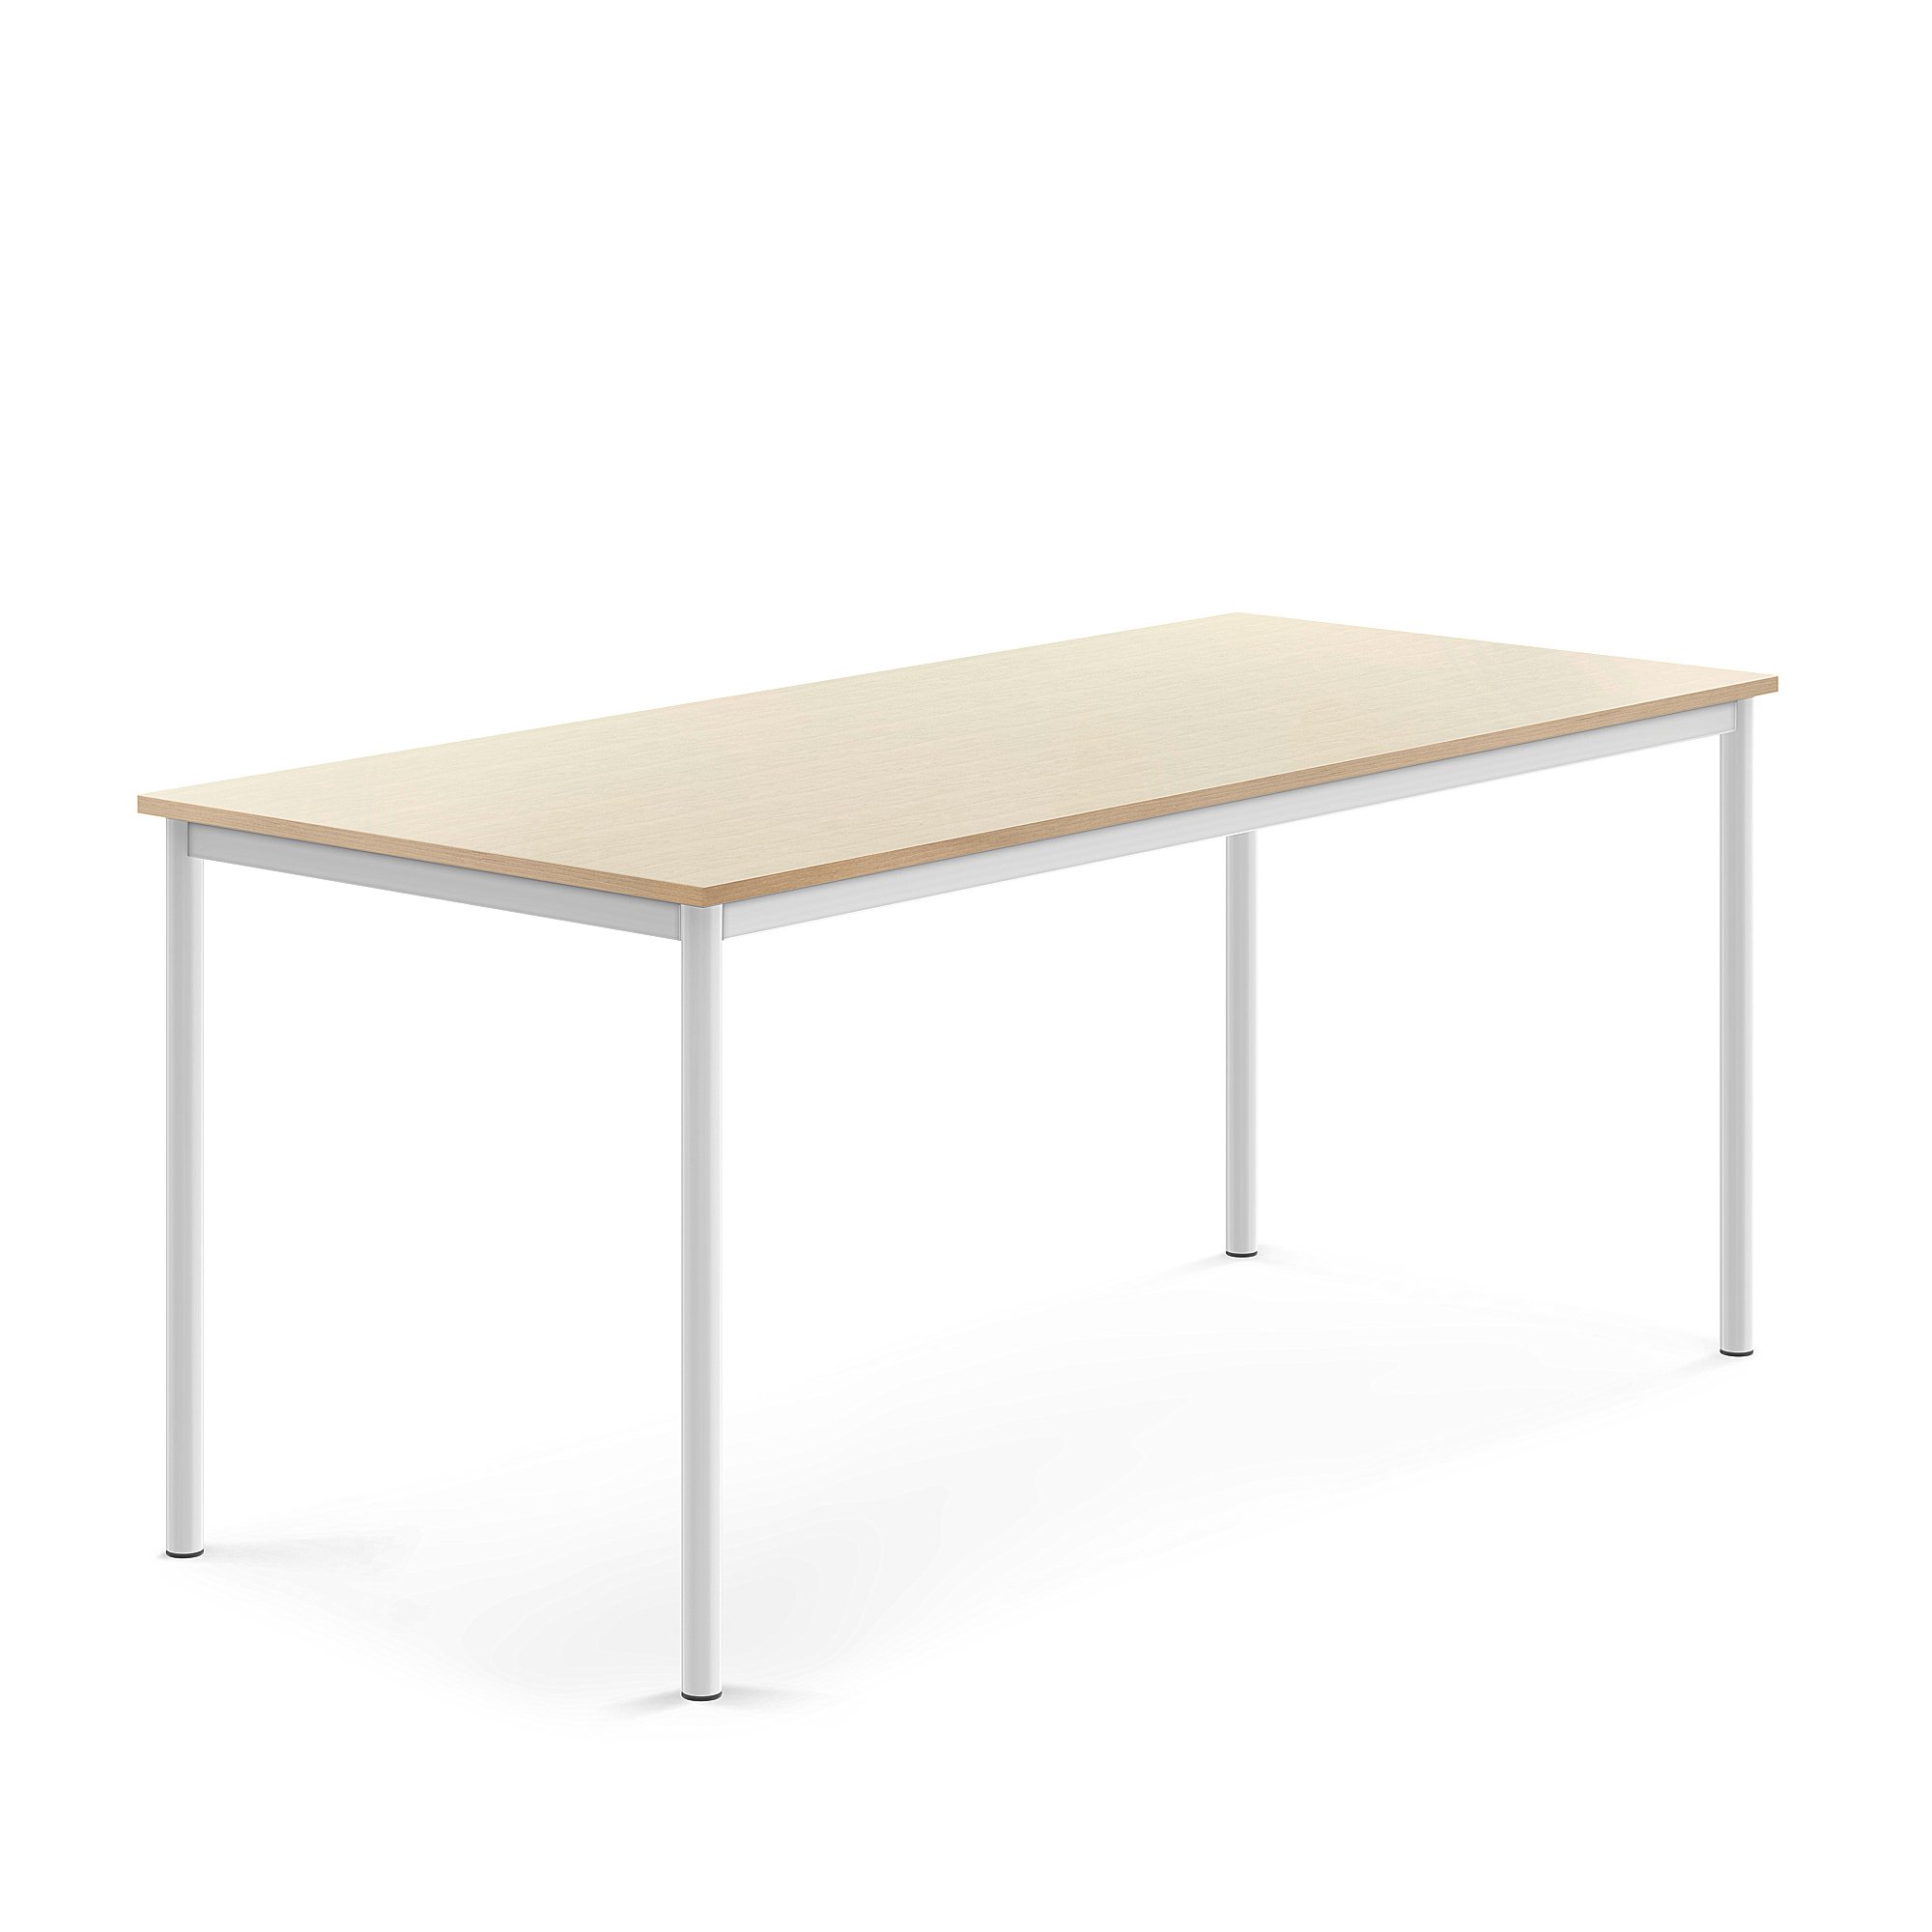 Stůl BORÅS, 1800x800x760 mm, bílé nohy, HPL deska, bříza